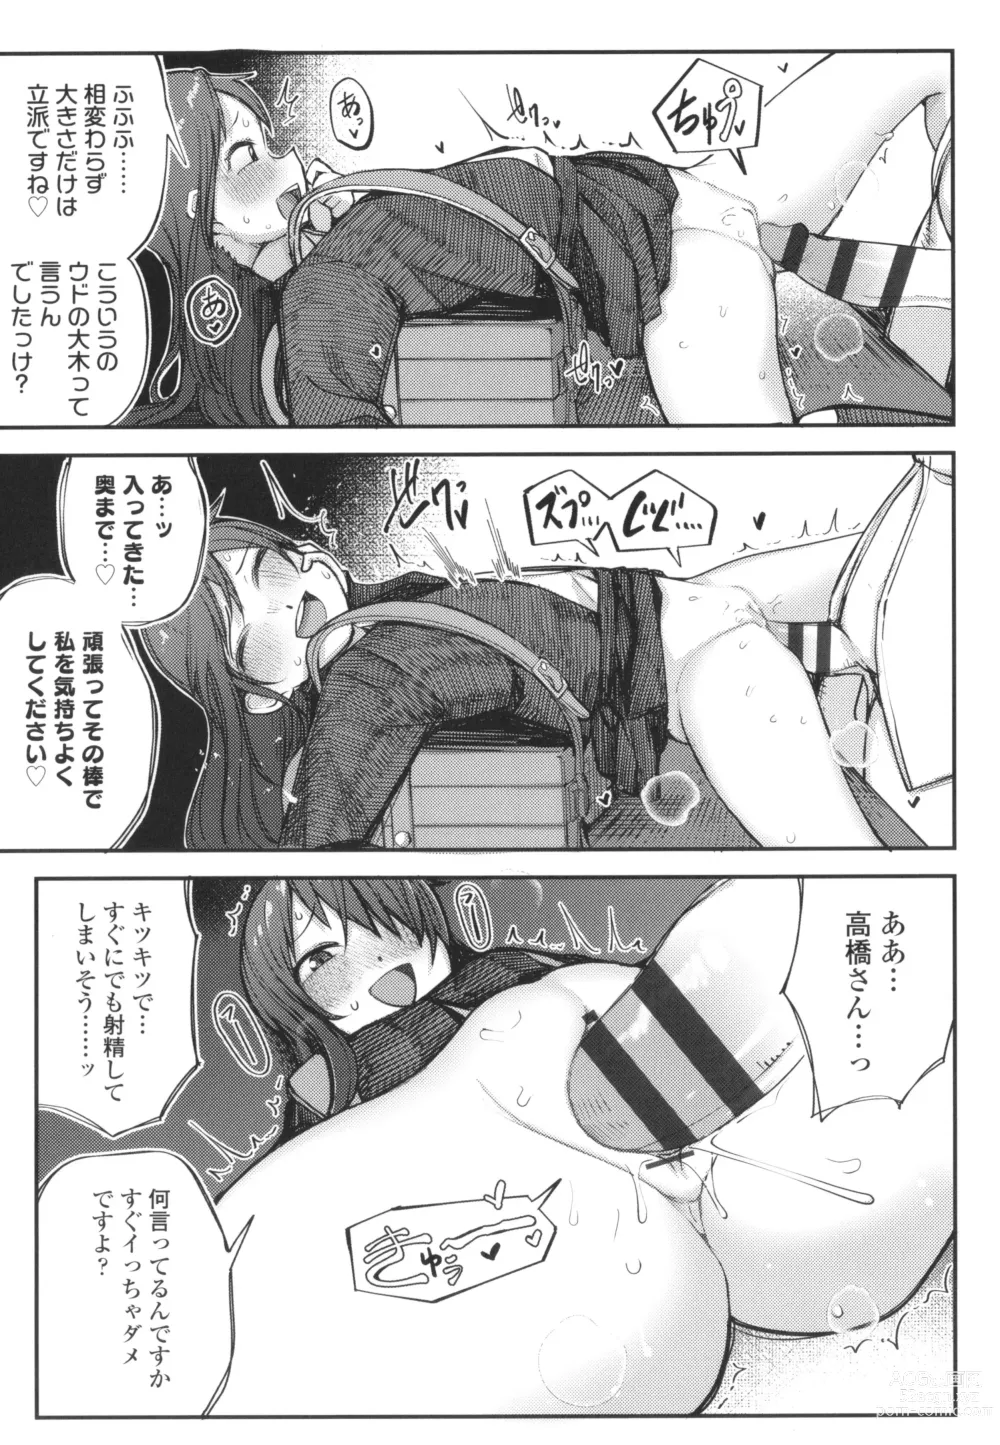 Page 10 of manga Dekireba Shiranaide ite Hoshii Koto